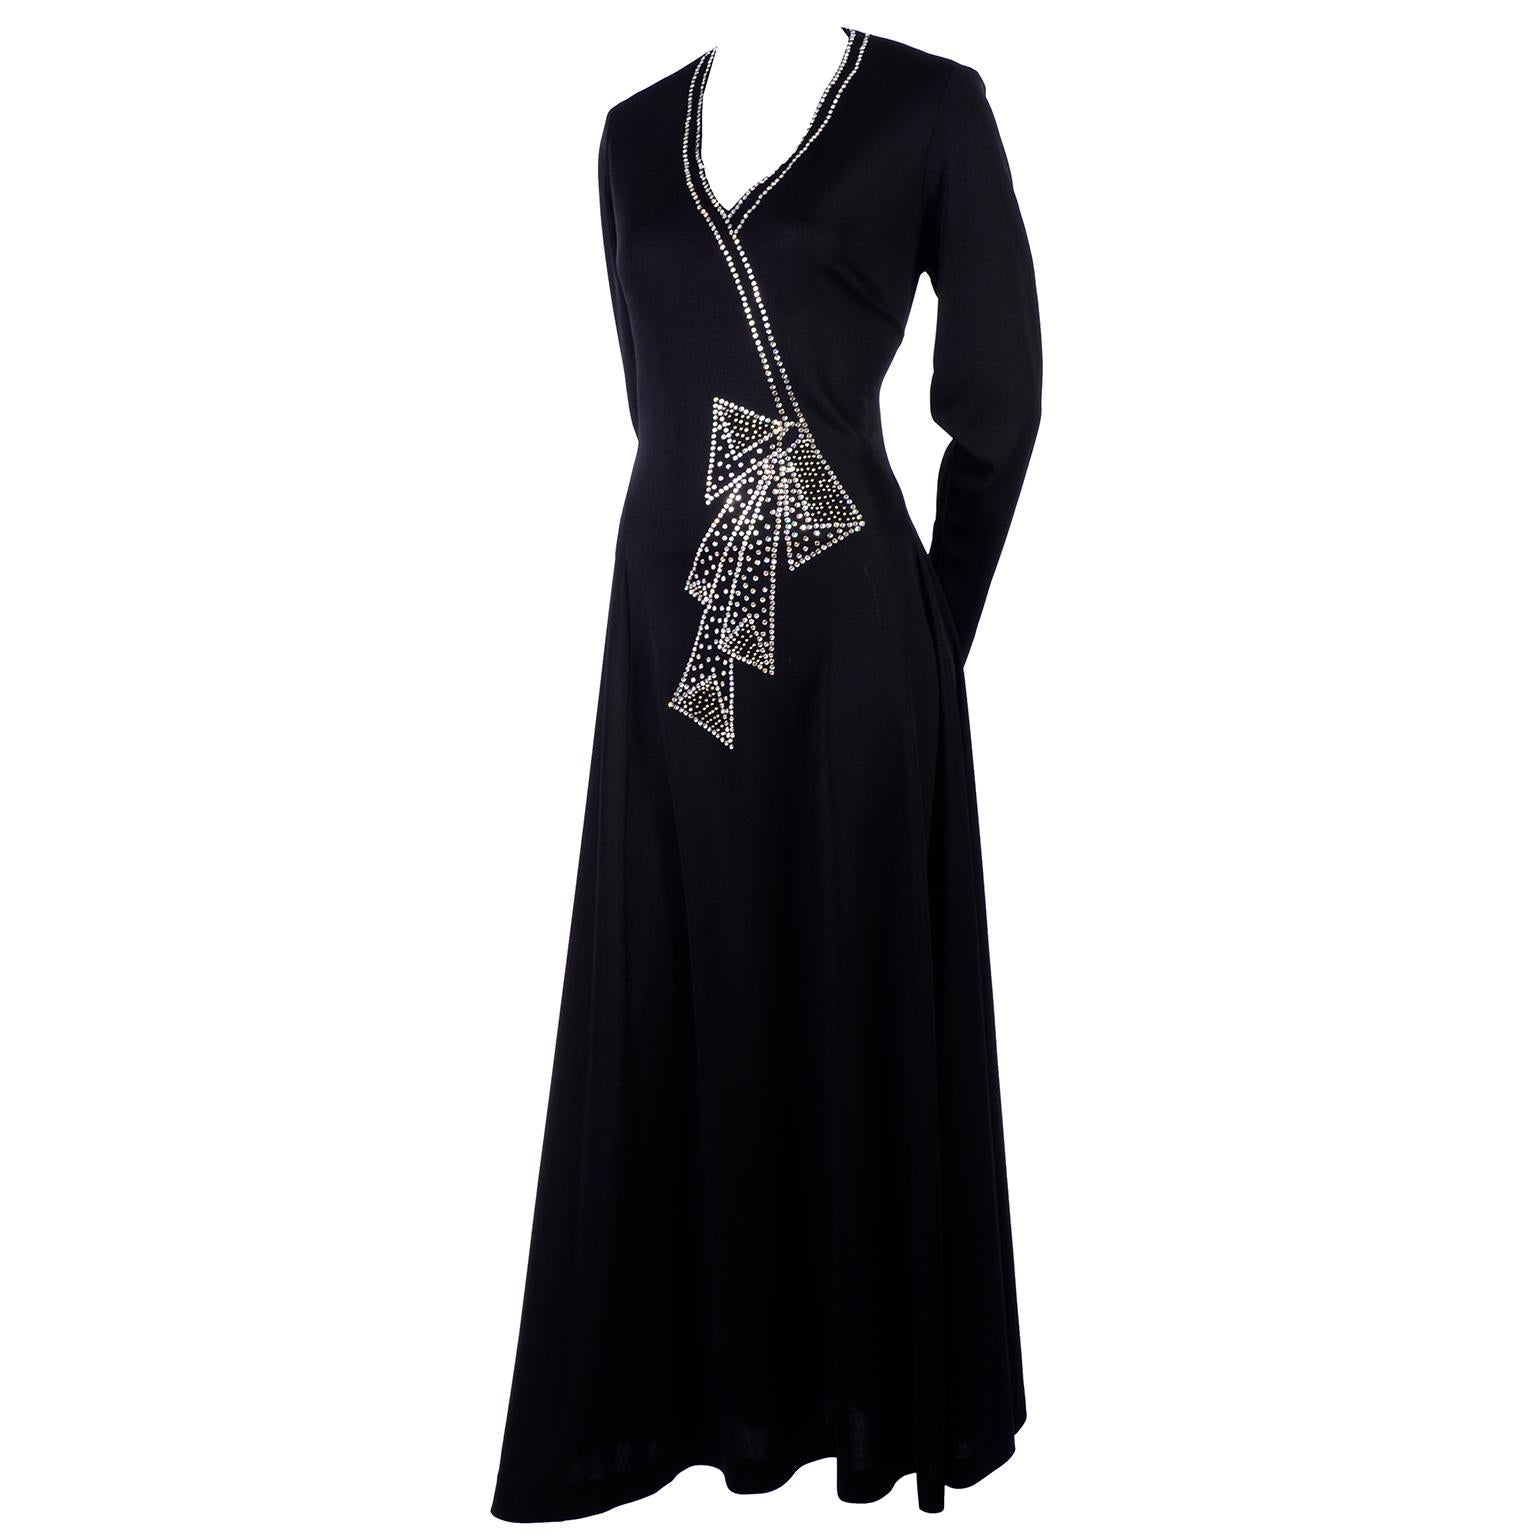 Rosalee 1960er Jahre Brooklyn Boutique Vintage schwarzes Kleid Trompe L'oeil Strass Schleife